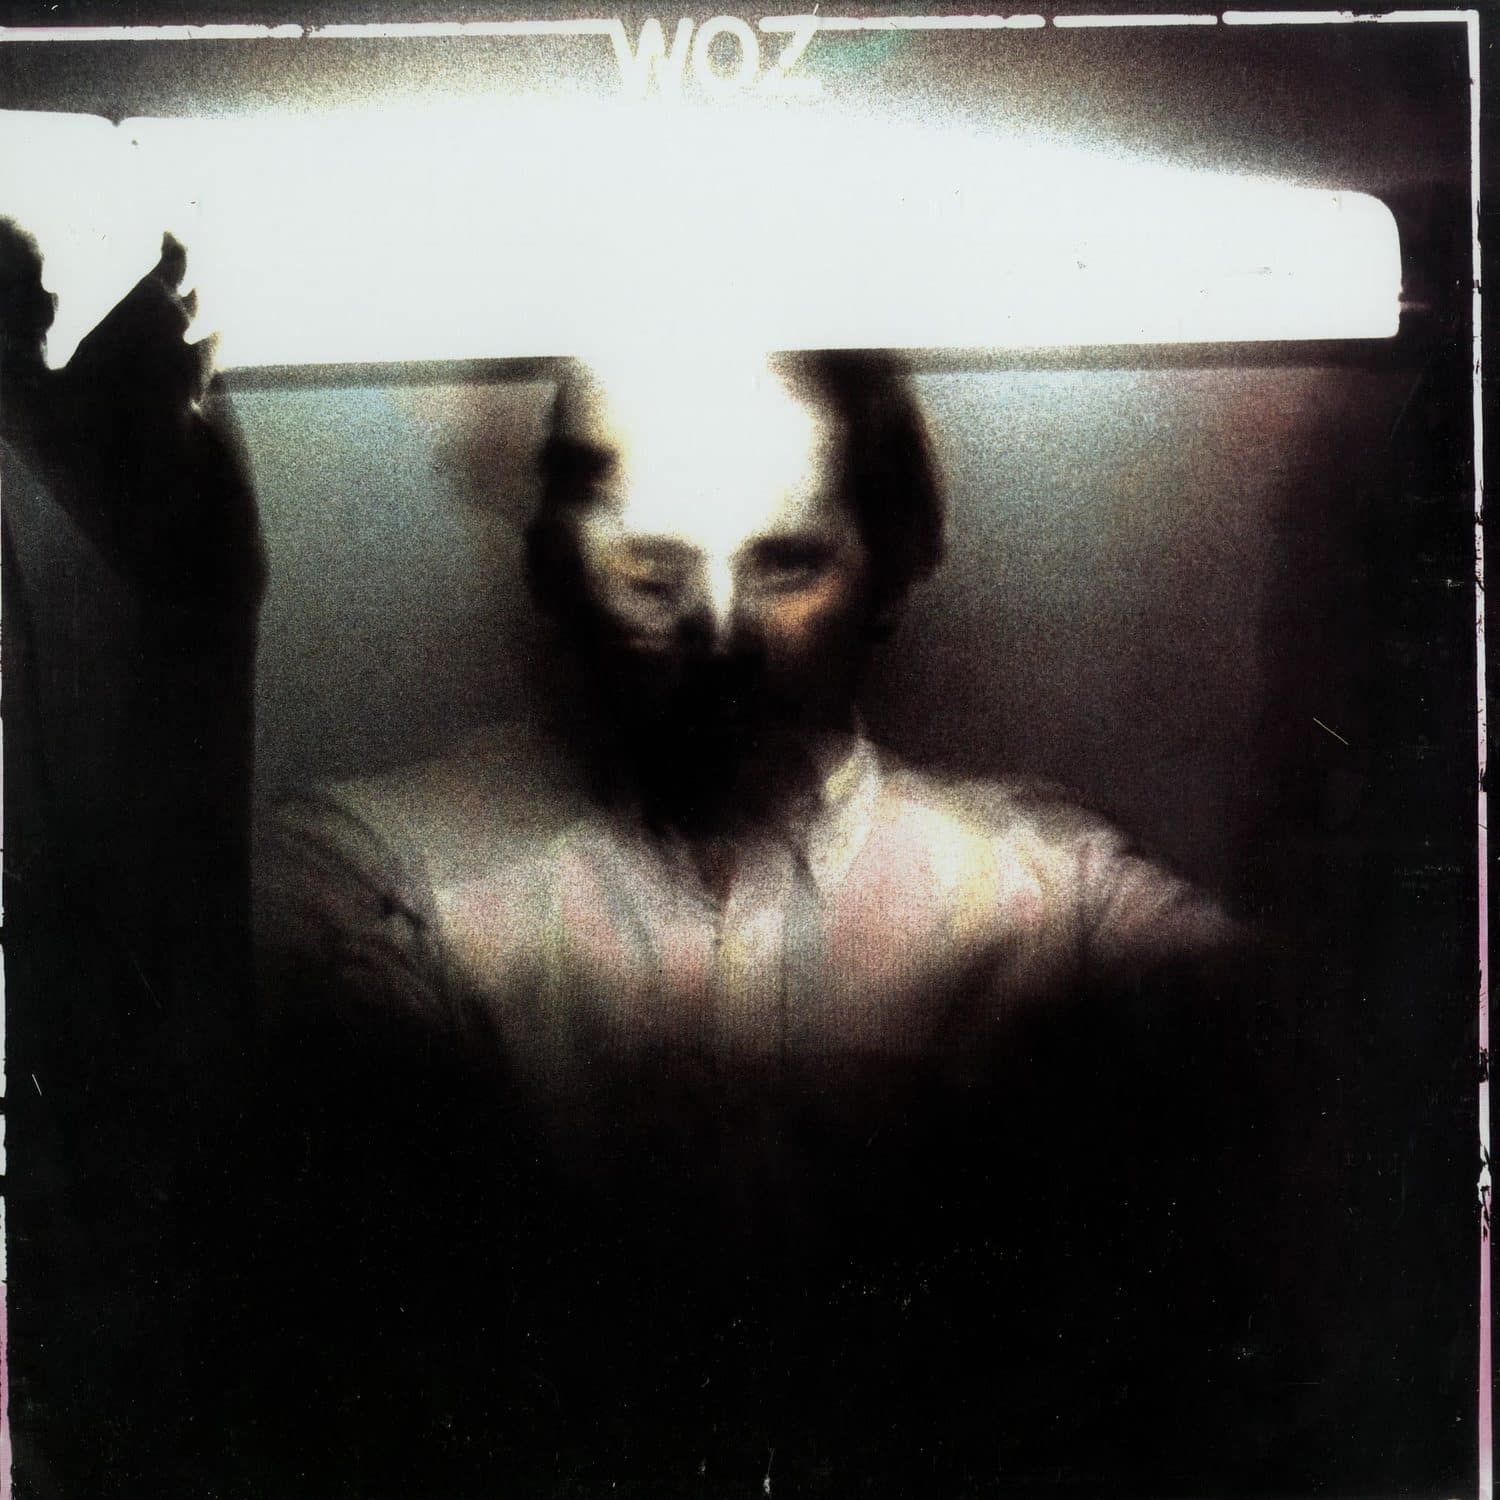 Paul Woznicki - WOZ